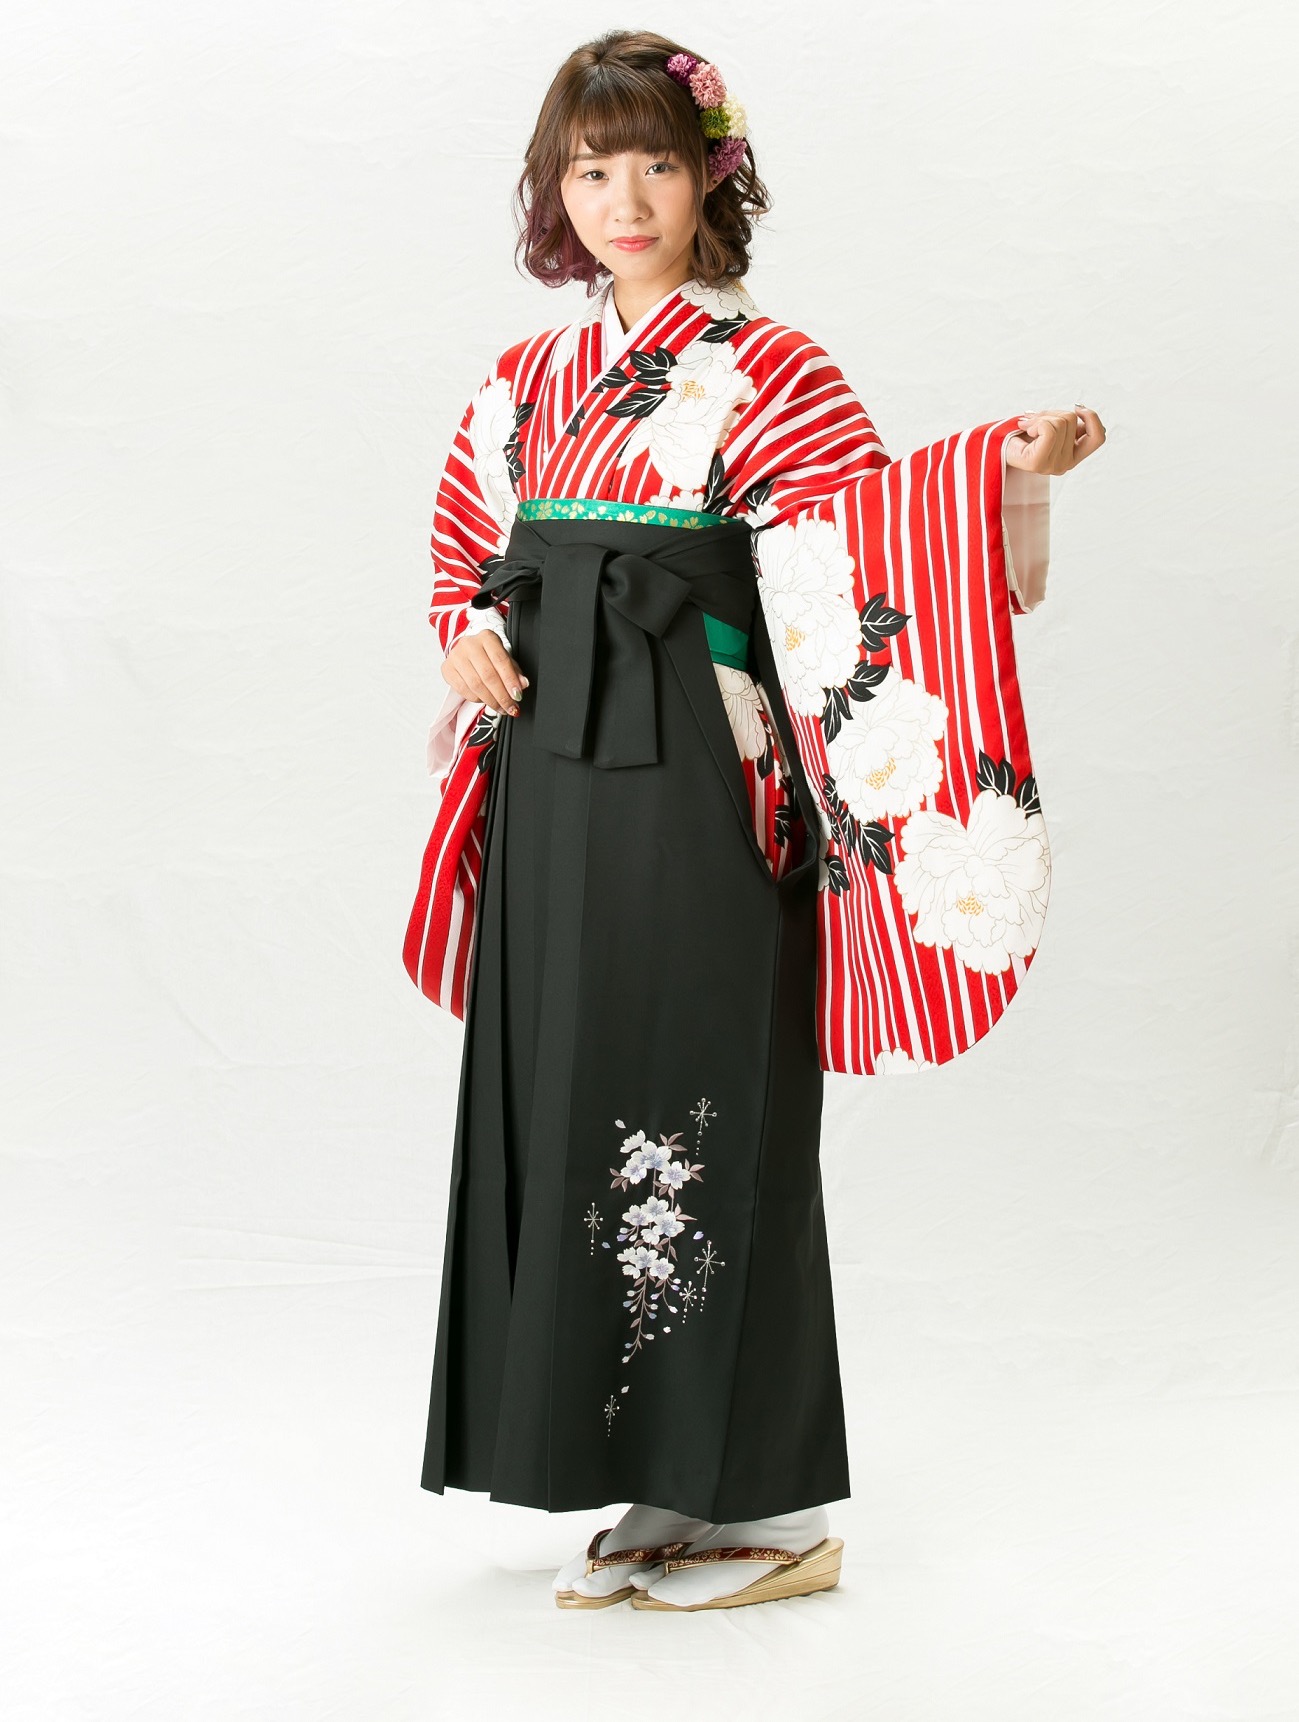 着物/1086 袴/1400 - 新潟の卒業式着物・袴レンタル 株式会社とまつ衣裳店